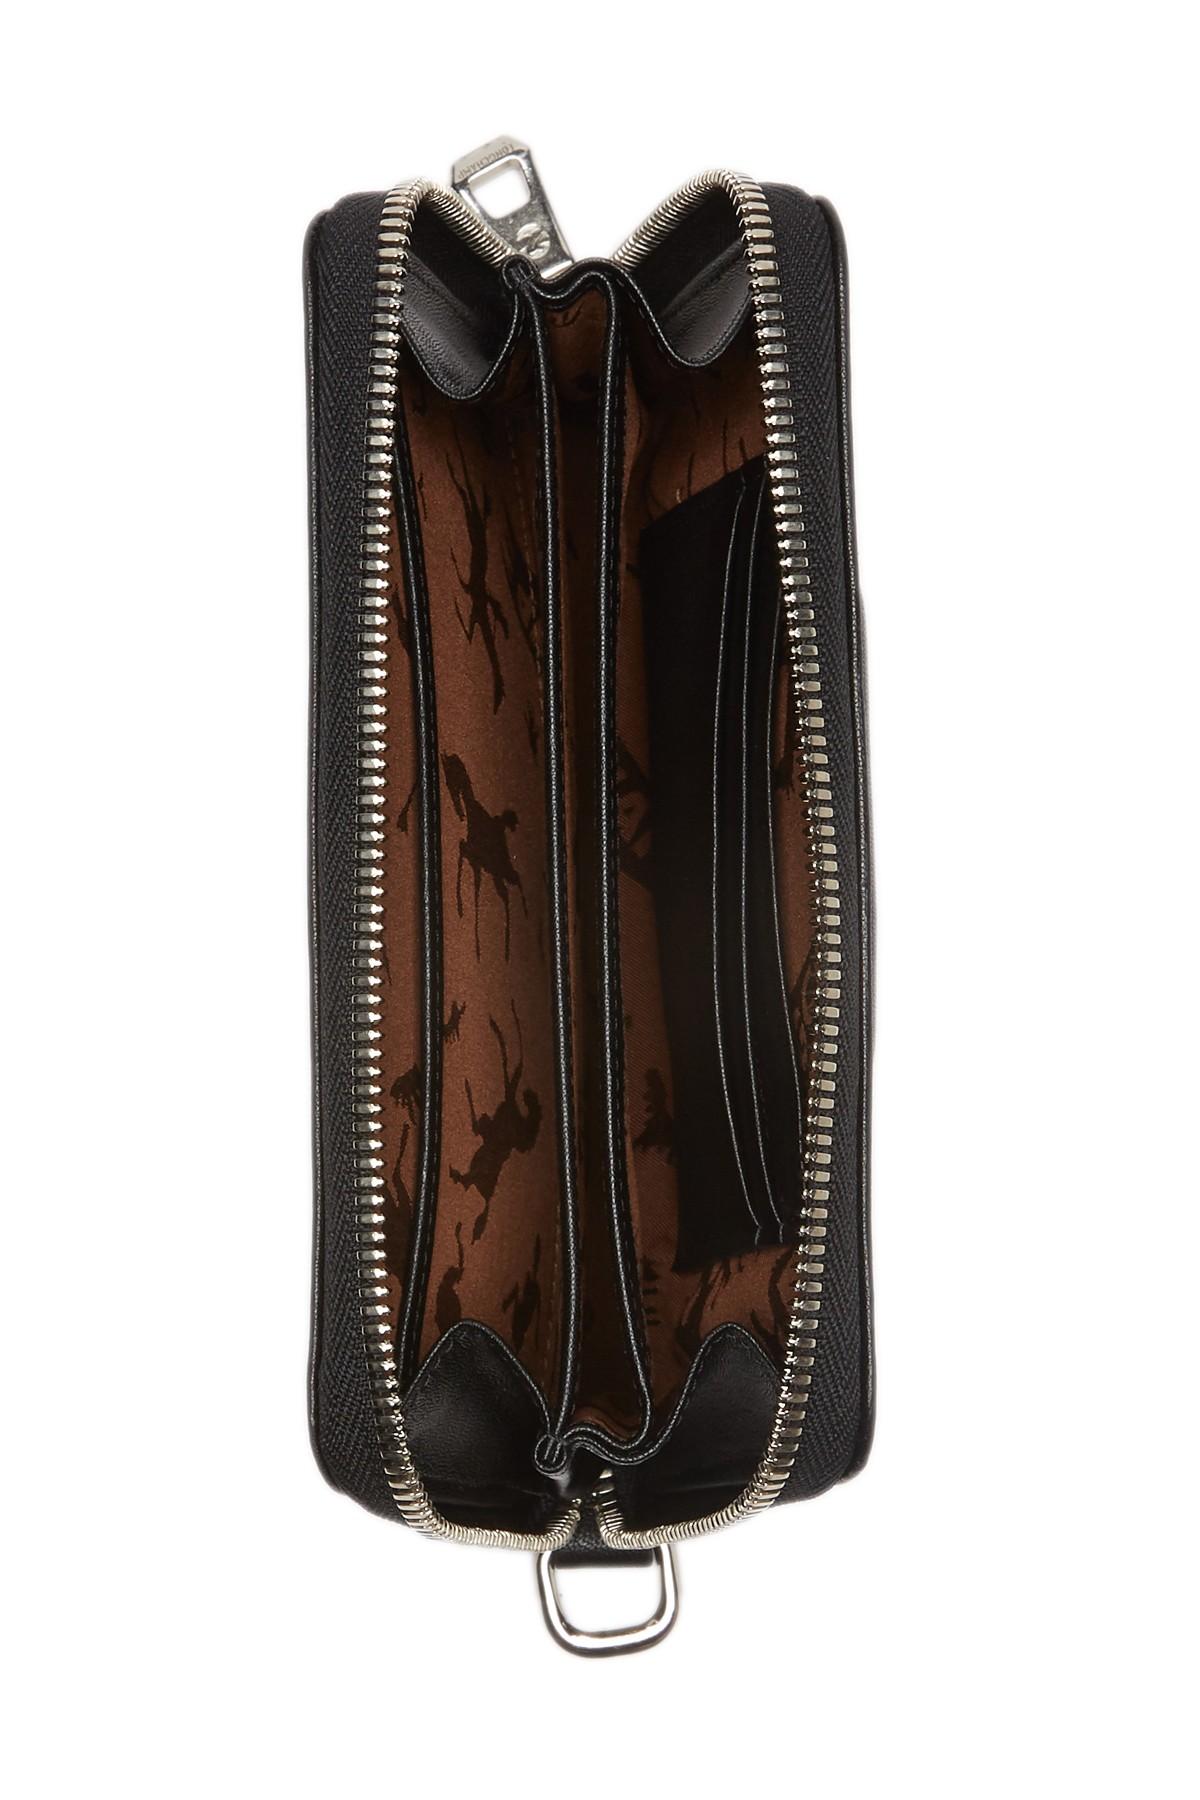 Longchamp Leather Wristlet Zip Wallet in Black - Lyst